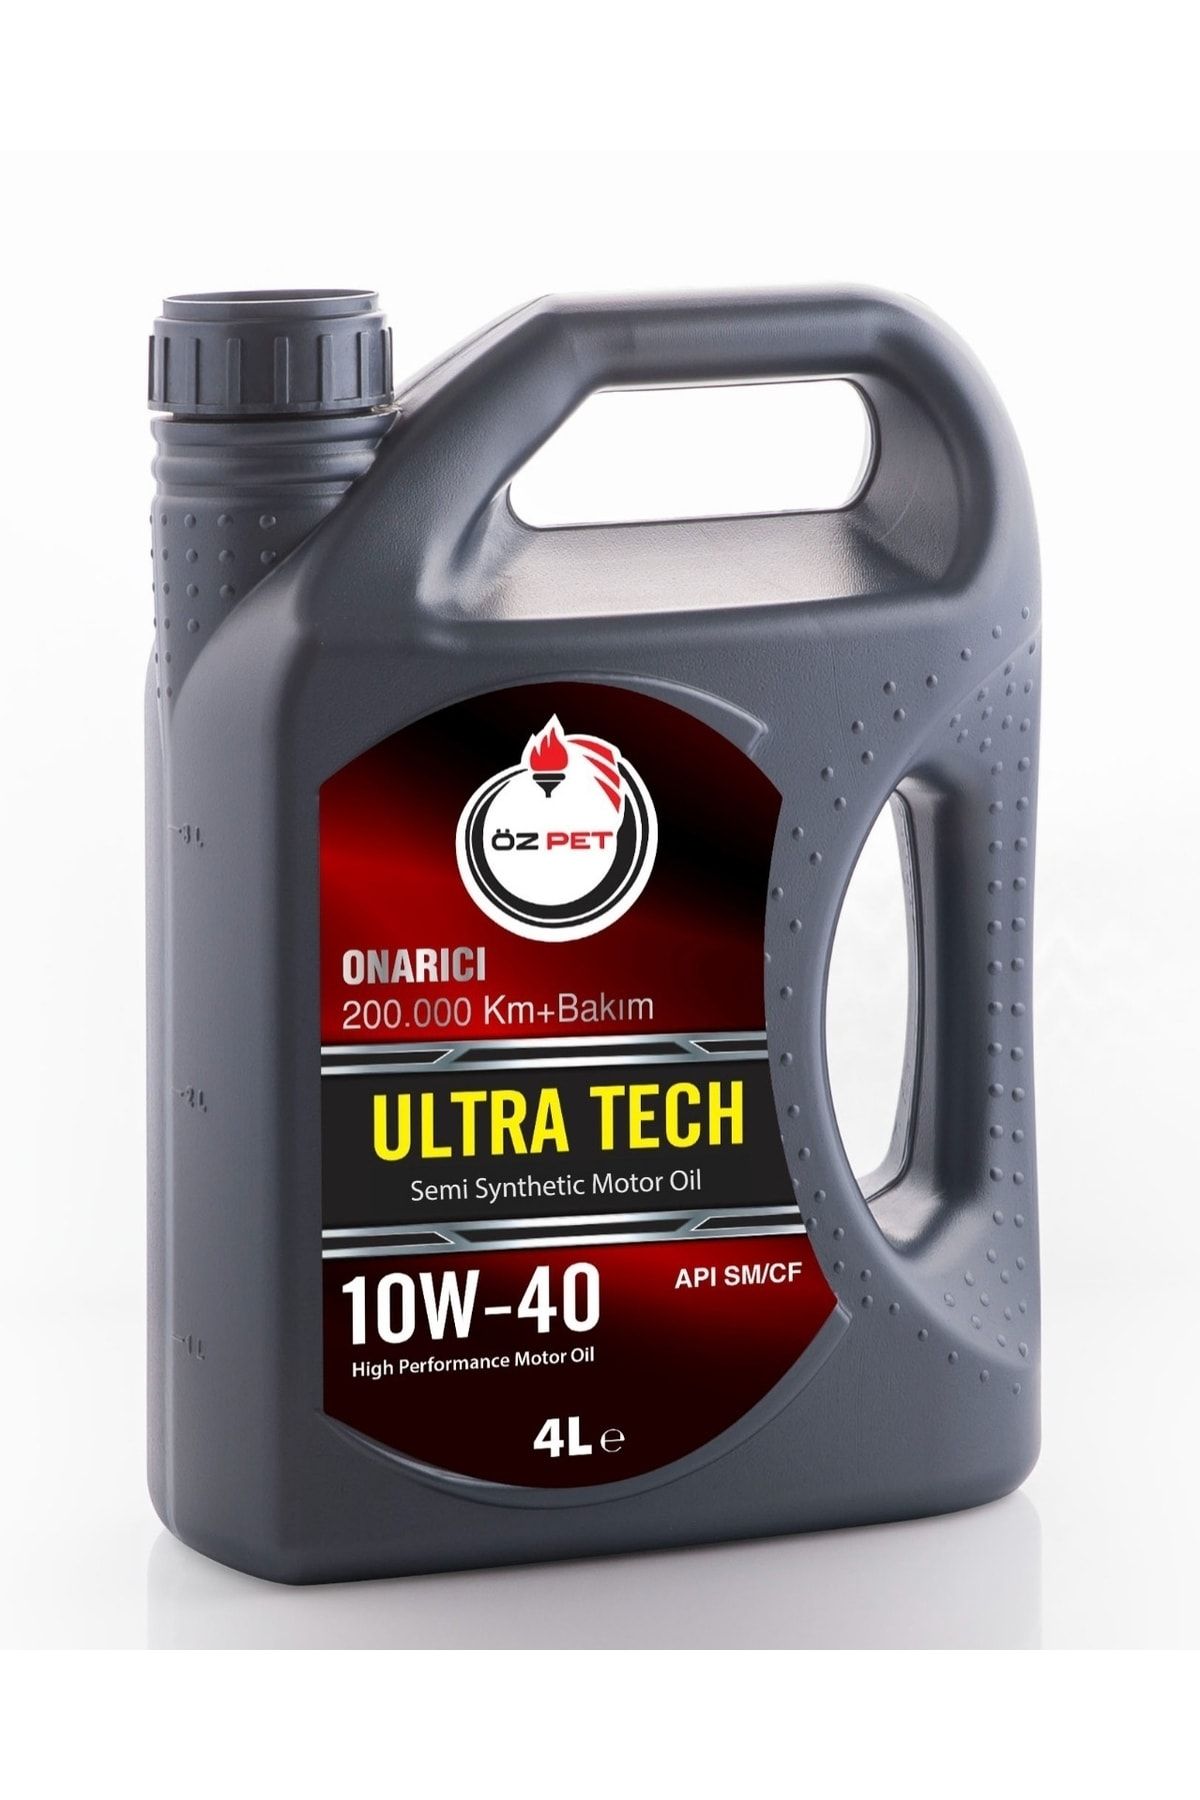 ÖZ PET Ultra Tech 10w-40 Onarıcı 200.000 Km Bakım Semi Synthetic Motor Oil 4 Lt